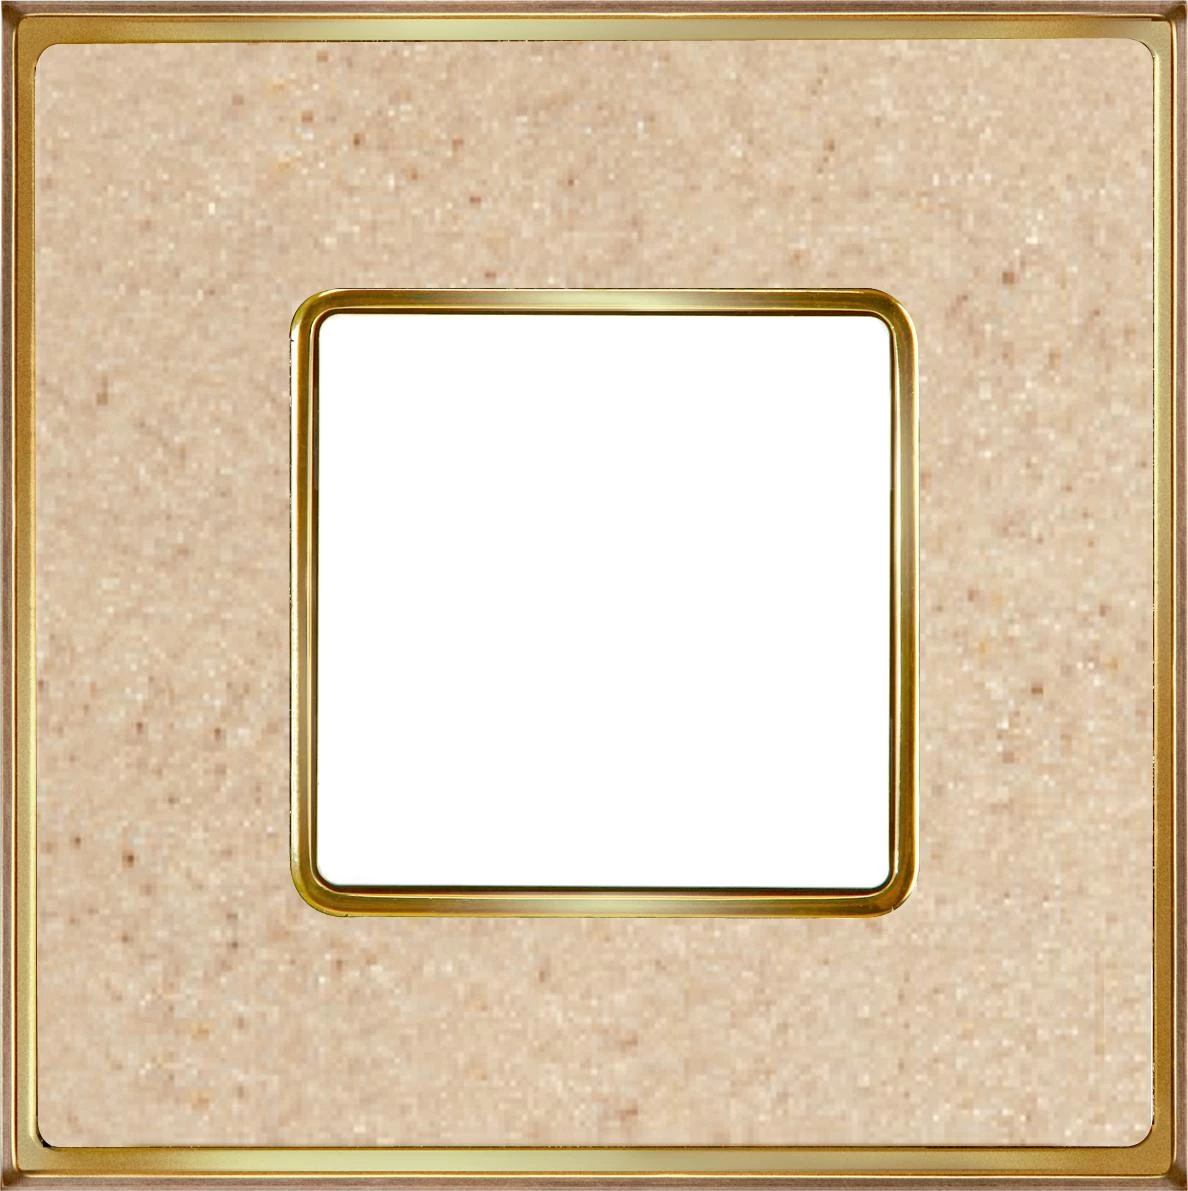  артикул FD01331AMOB название Рамка 1-ая (одинарная), цвет Светлый кориан/Светлое золото, VINTAGE CORINTO, Fede